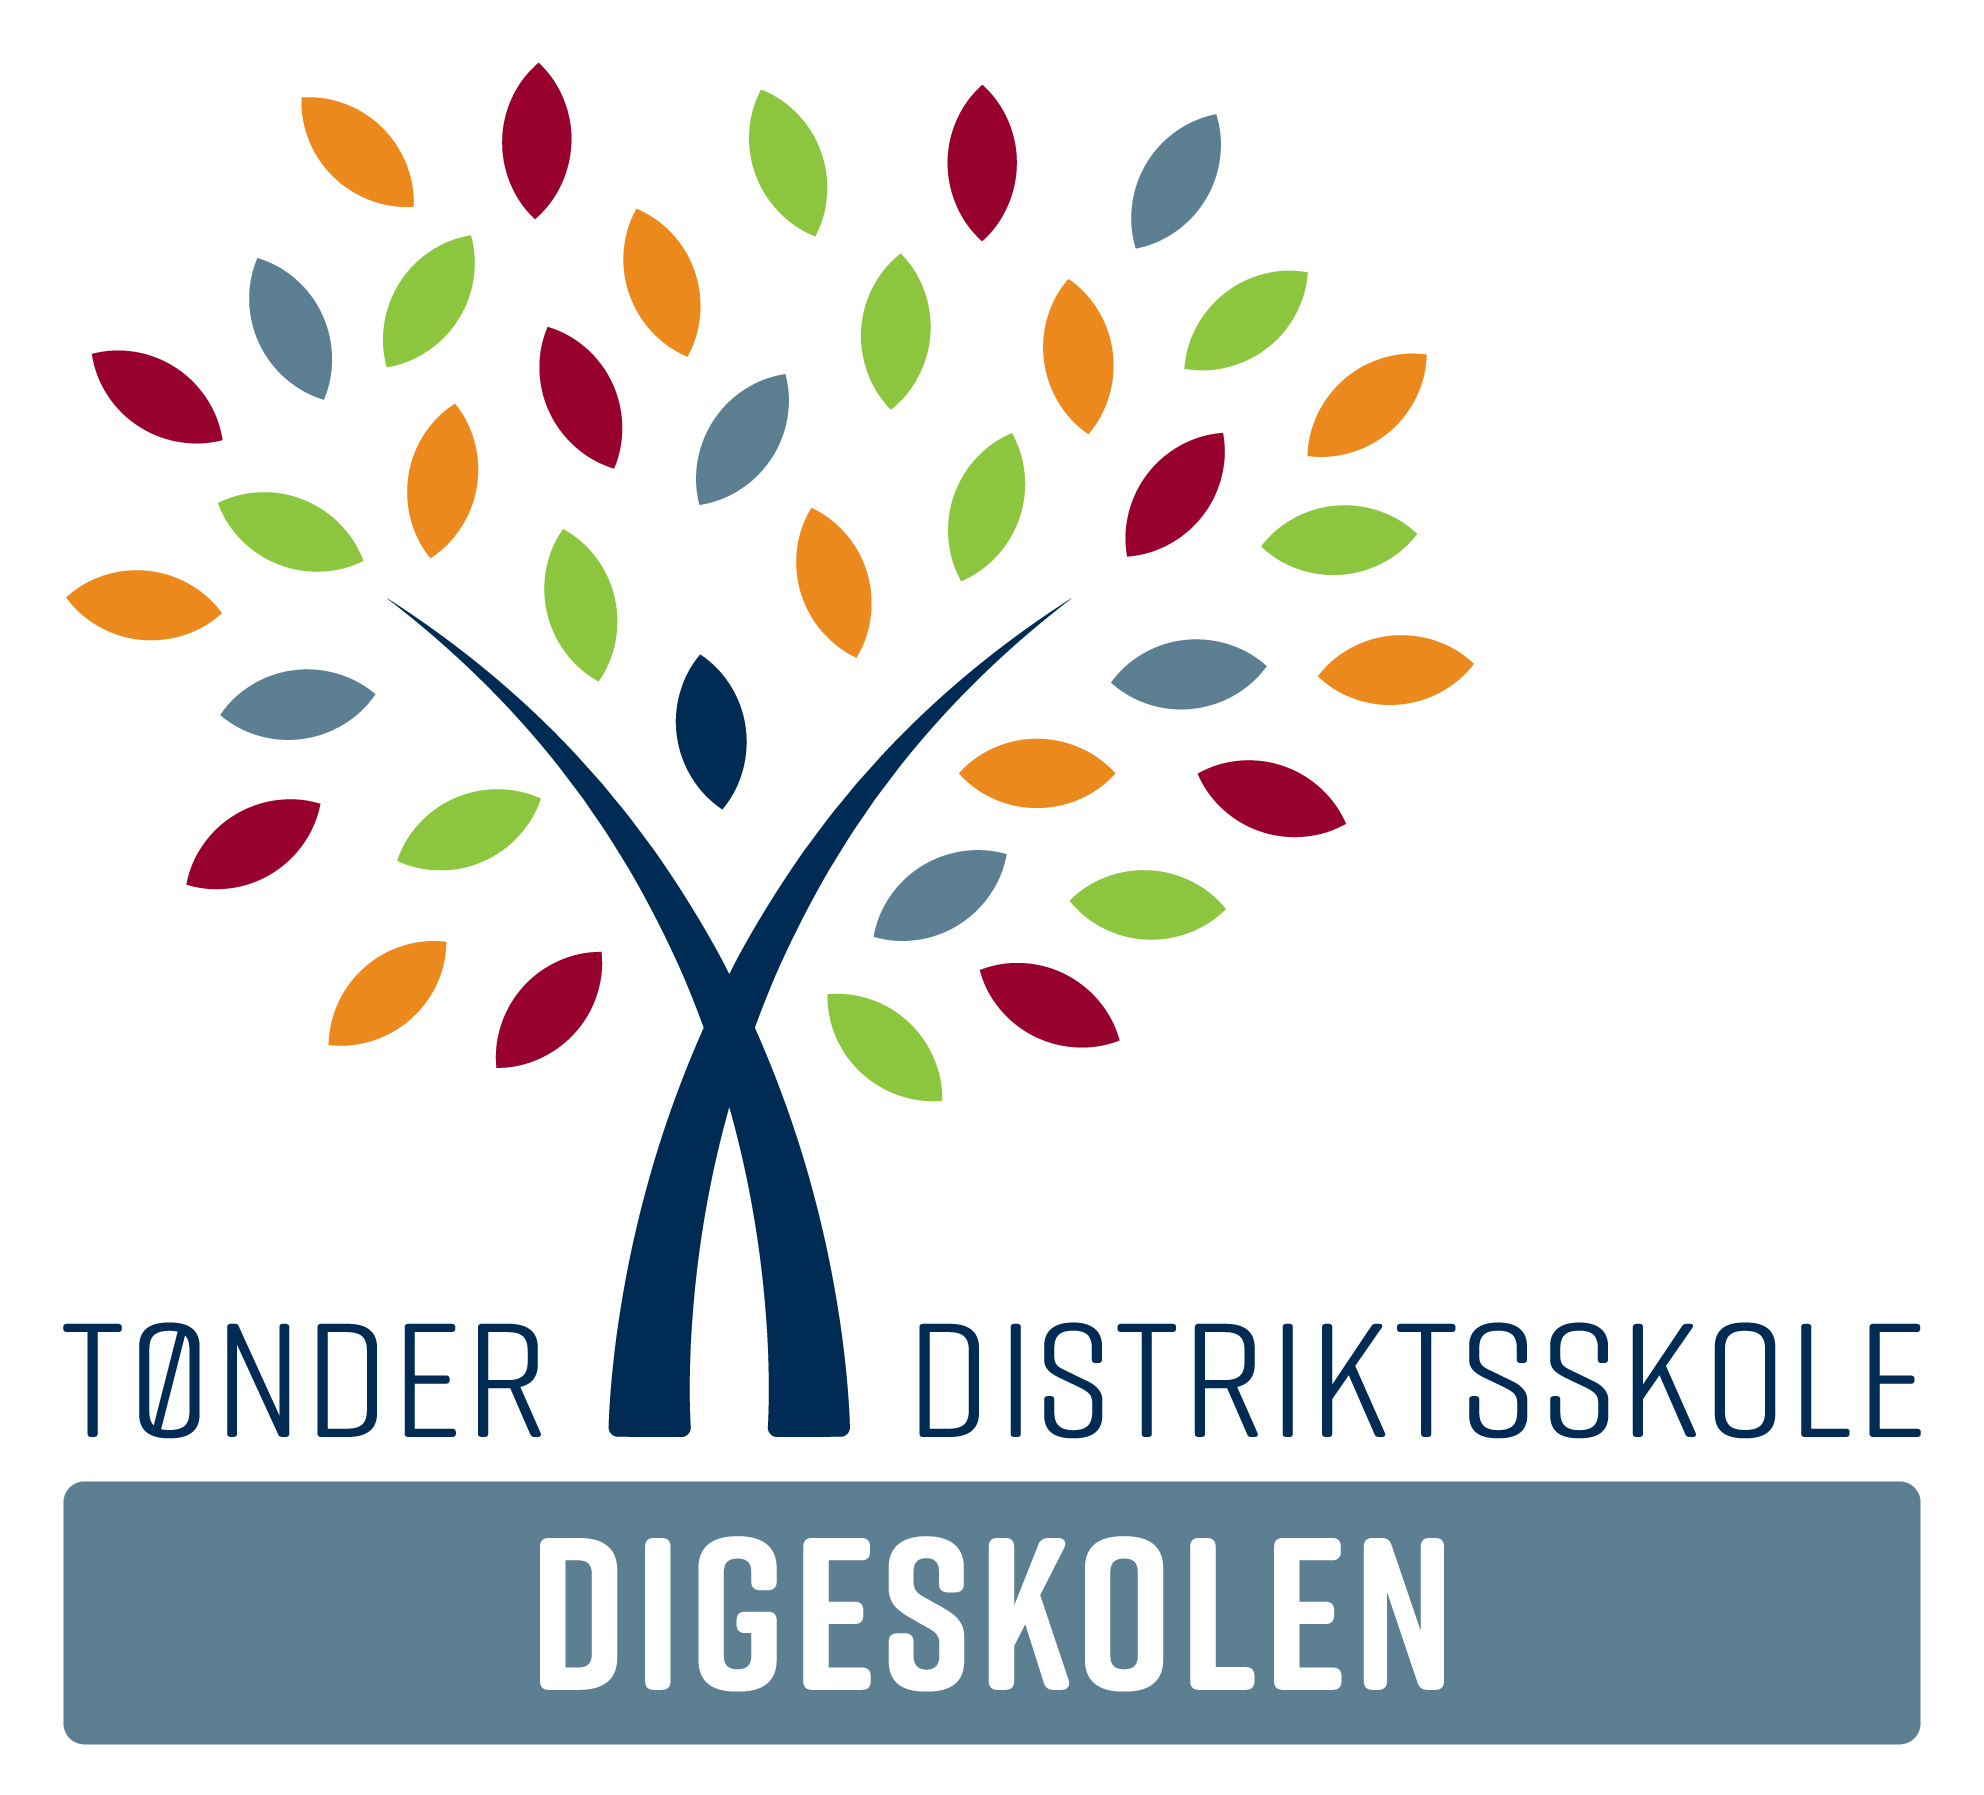 Digeskolens logo